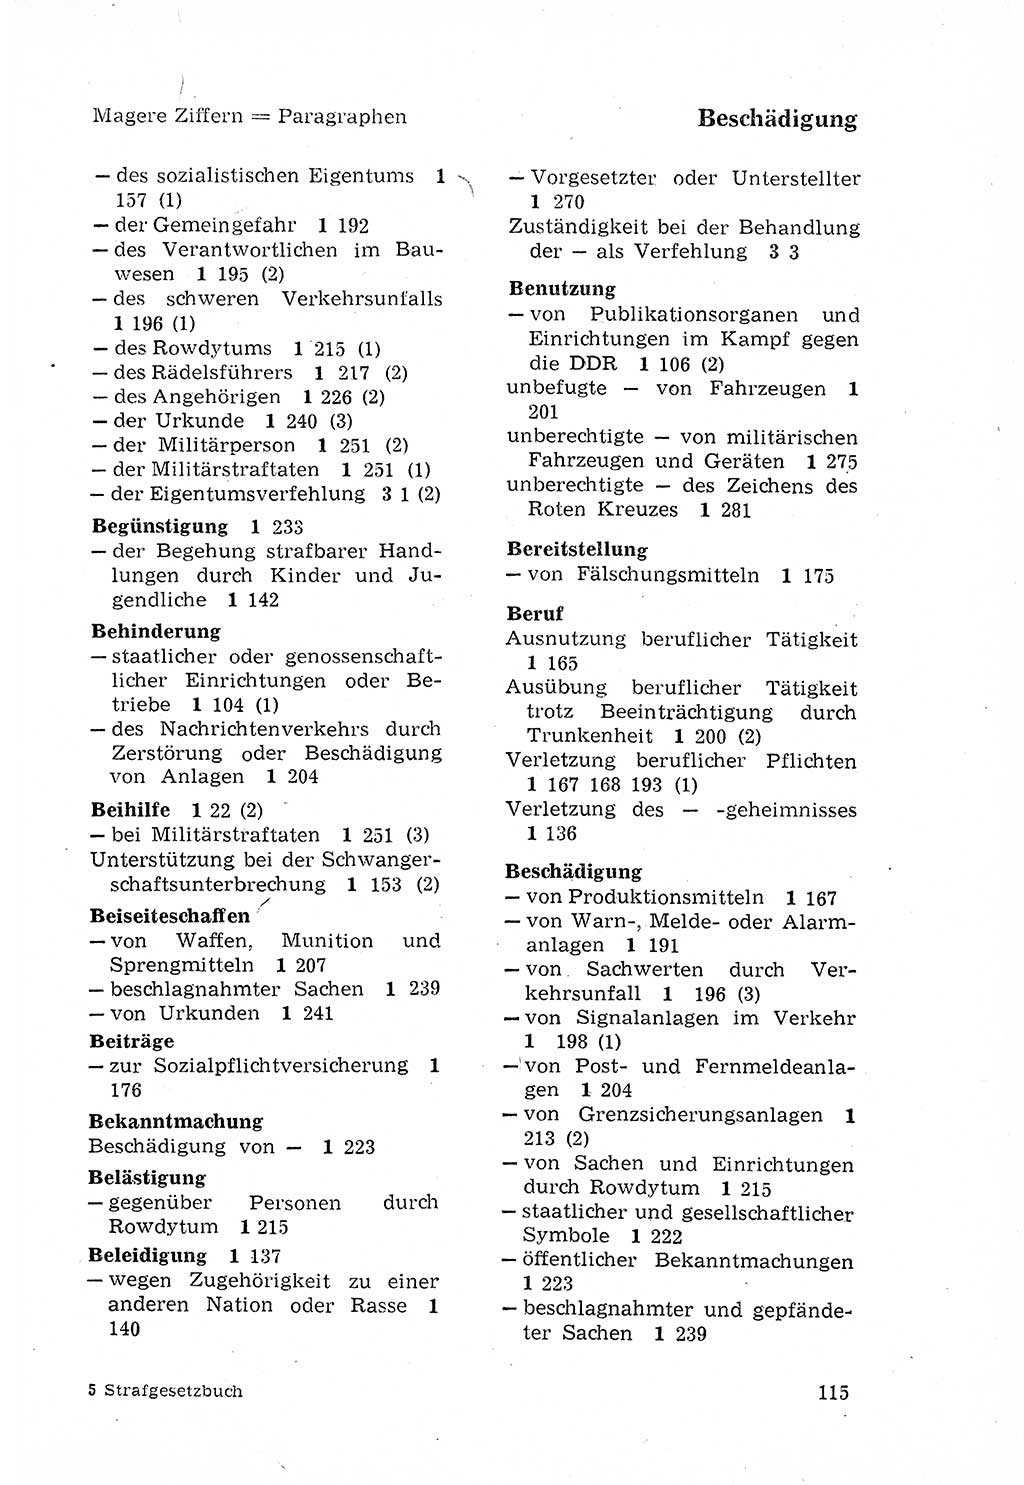 Strafgesetzbuch (StGB) der Deutschen Demokratischen Republik (DDR) 1968, Seite 115 (StGB DDR 1968, S. 115)